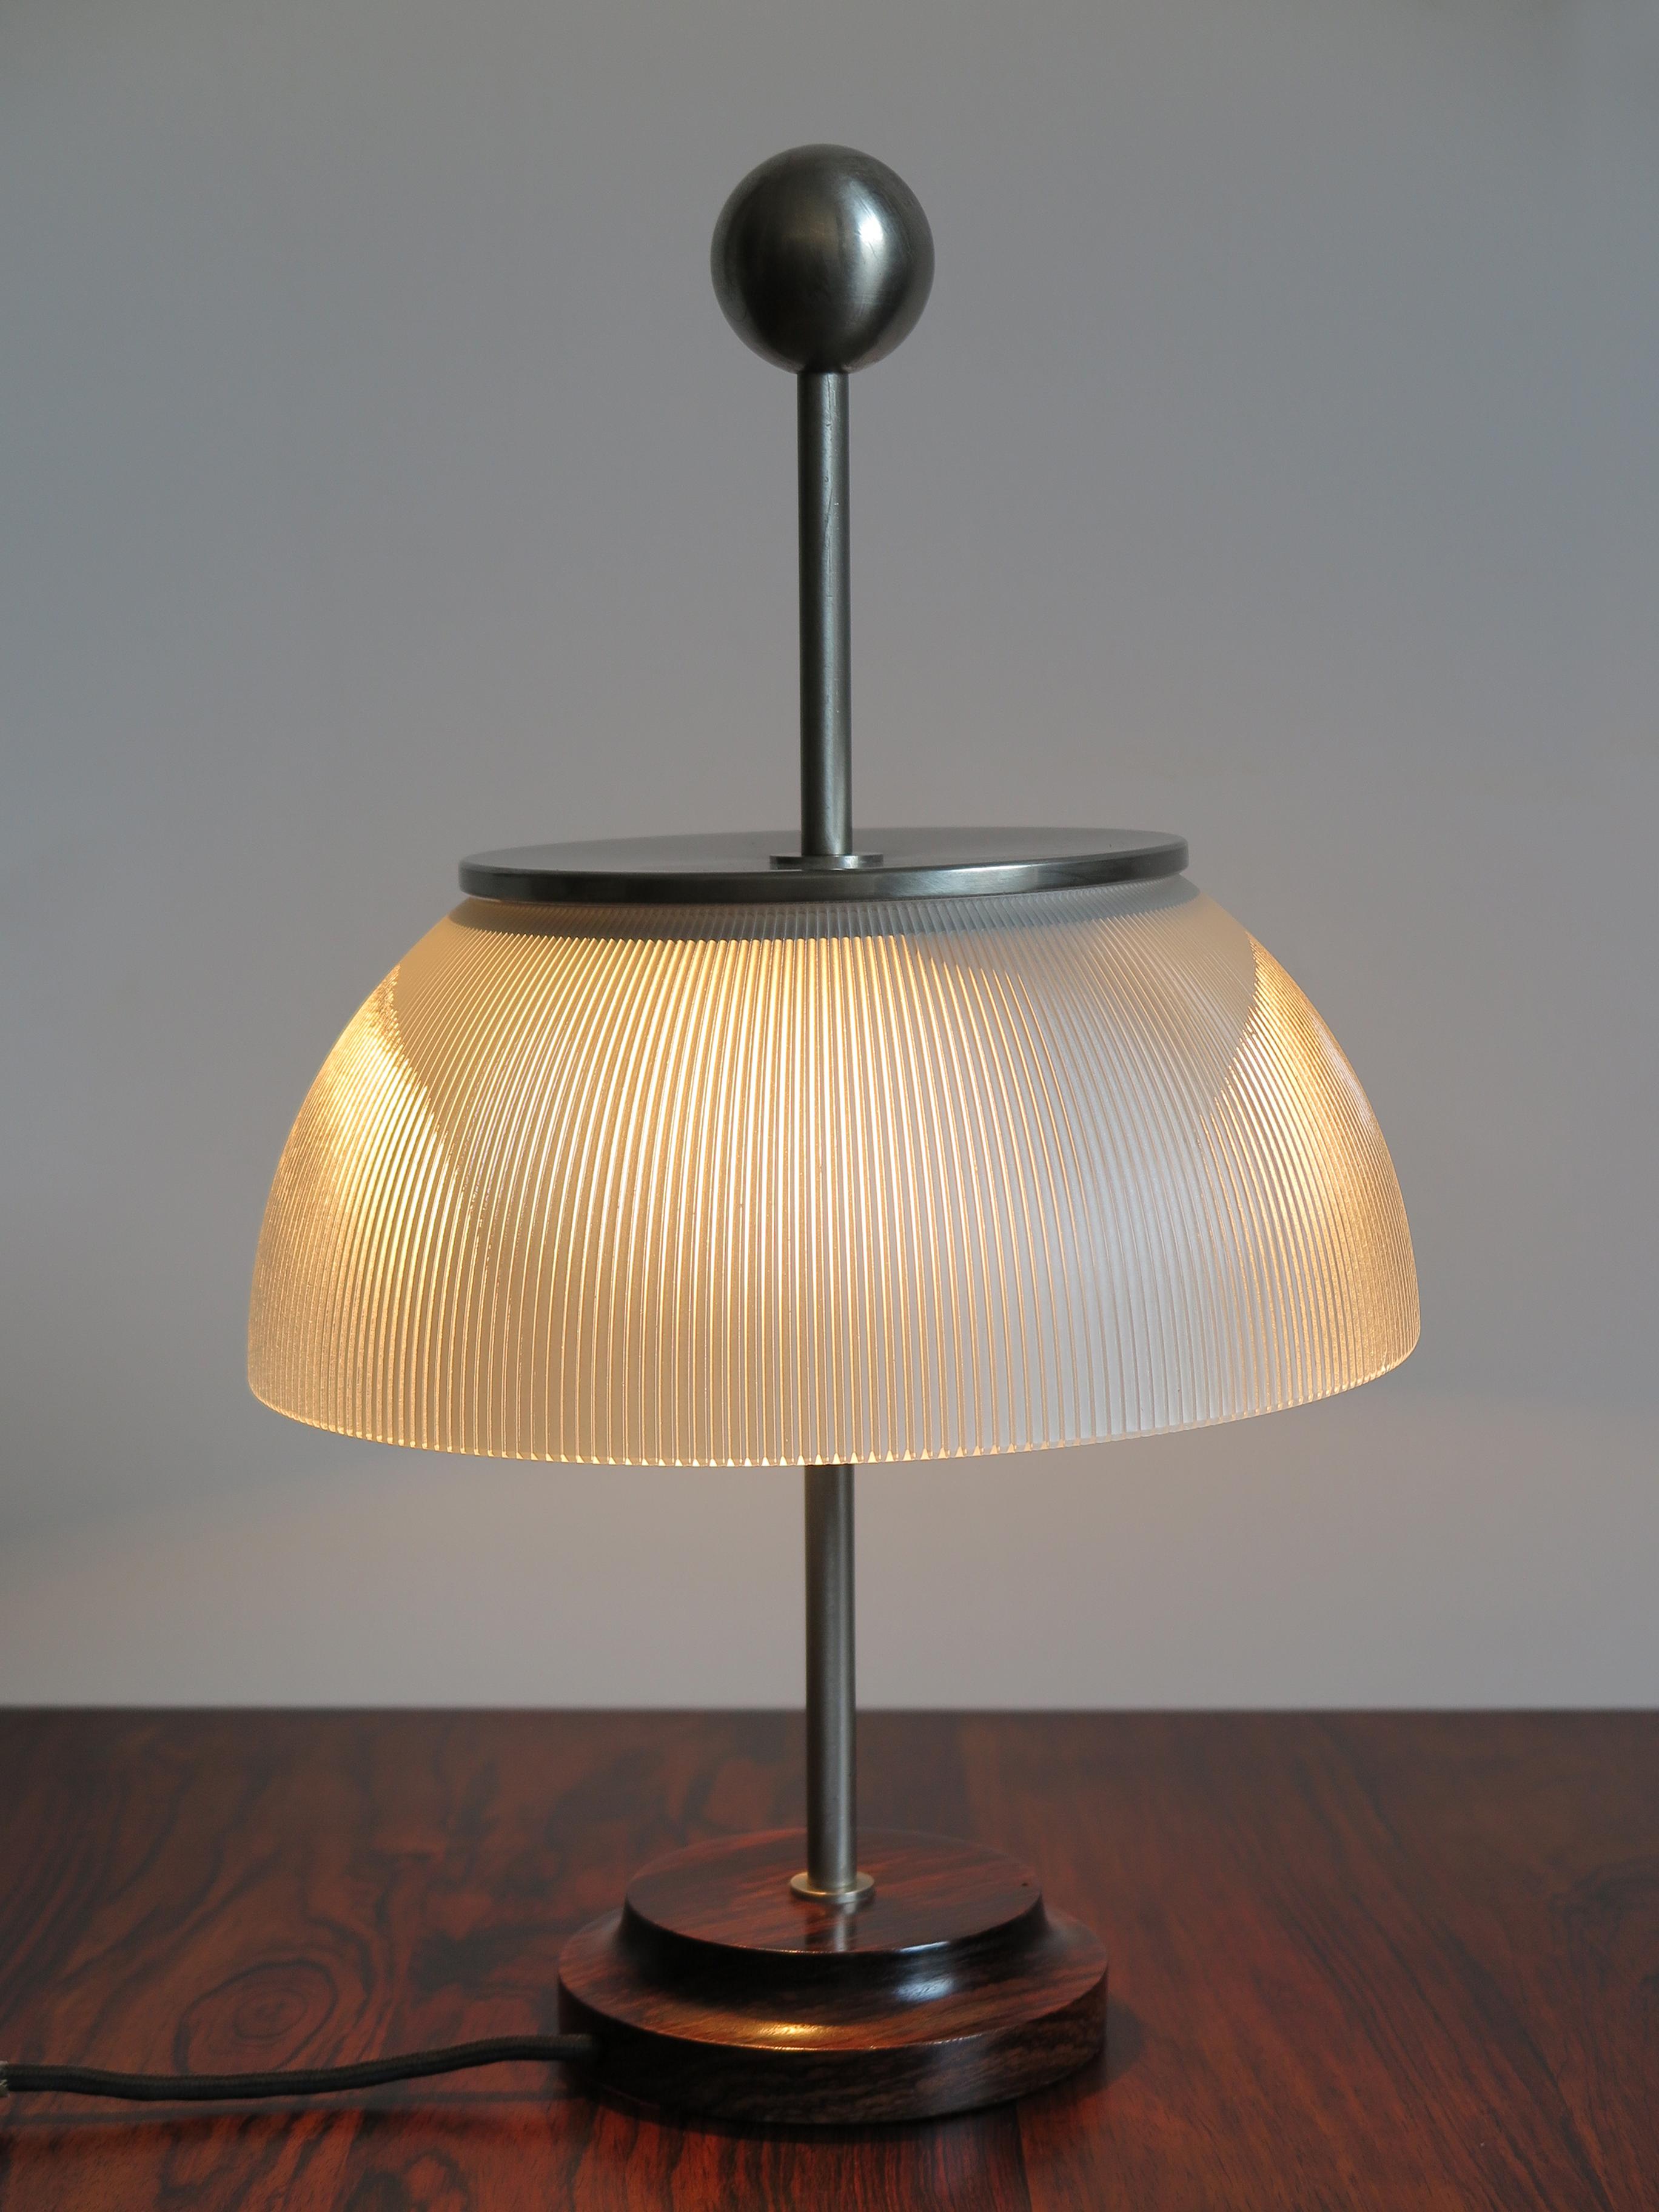 1960s Italian table lamp model Alfa designed by Sergio Mazza for Artemide.
literature:
Domus 399 (February 1963), pag. 107
Octagon 4 (January 1967), page 74
Giuliana Gramigna Repertoirio 1950-2000, Allemandi Torino 2003, pag. 84.